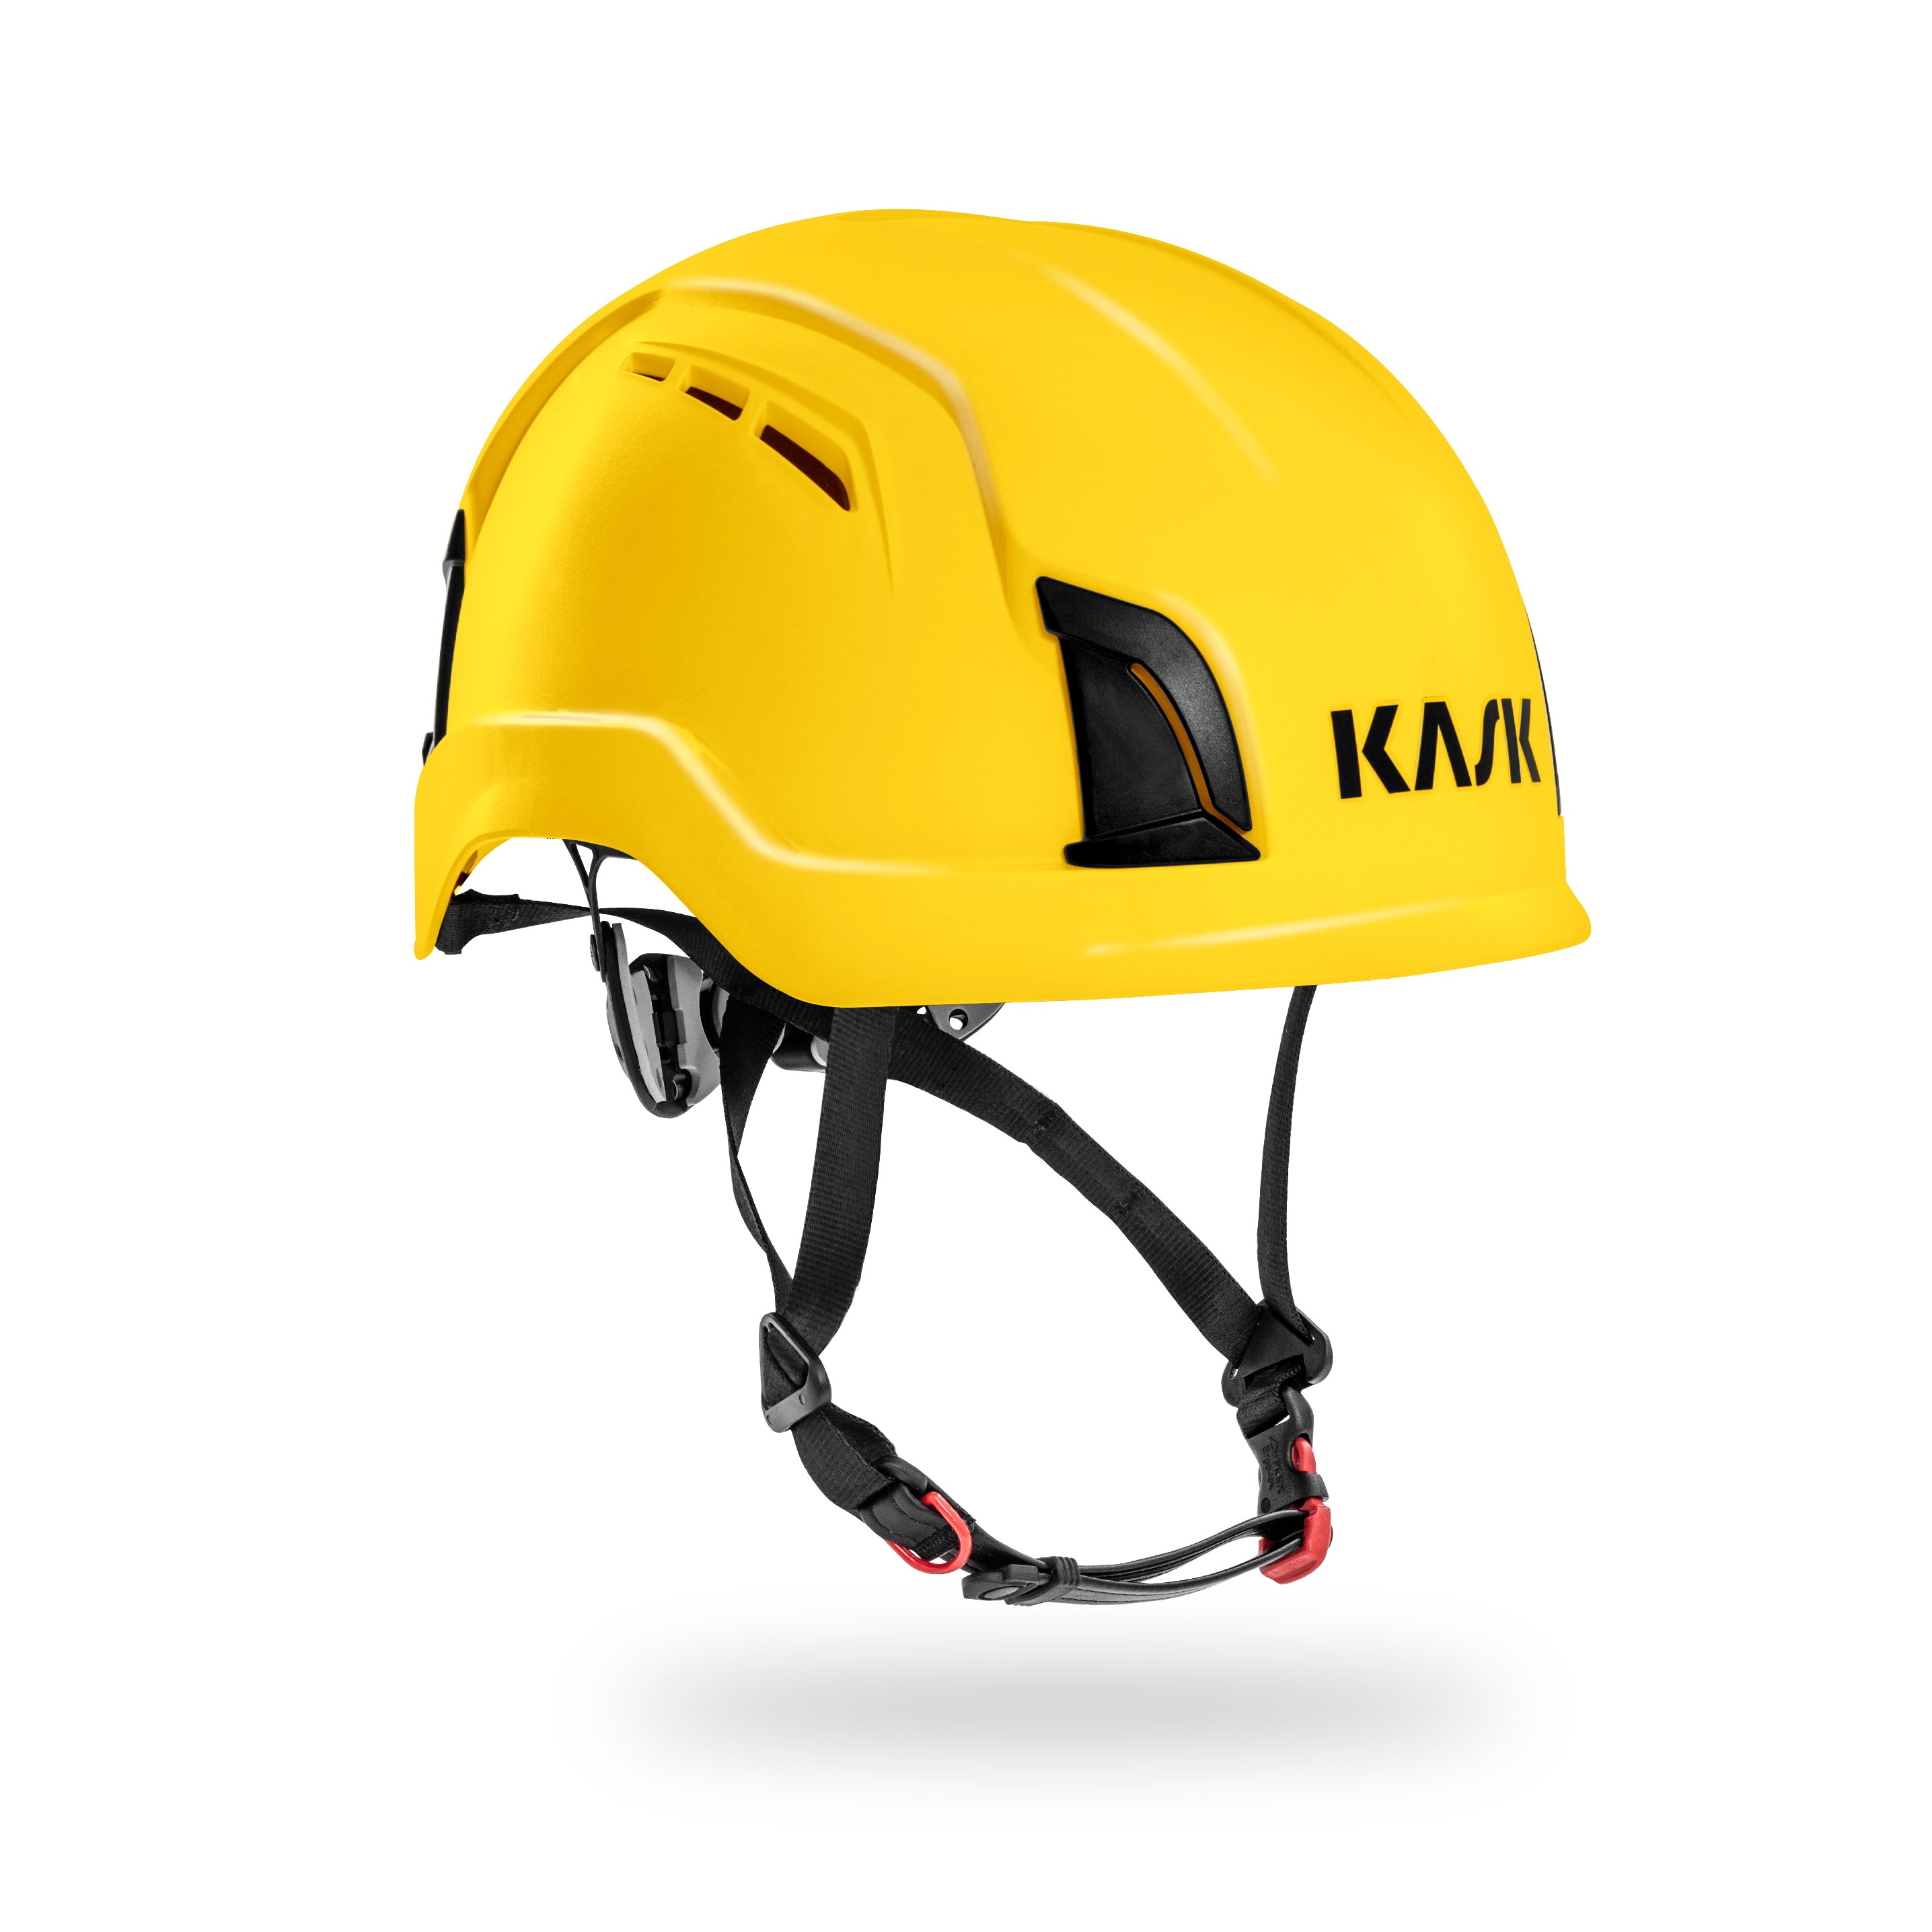 zenith helmet yellow